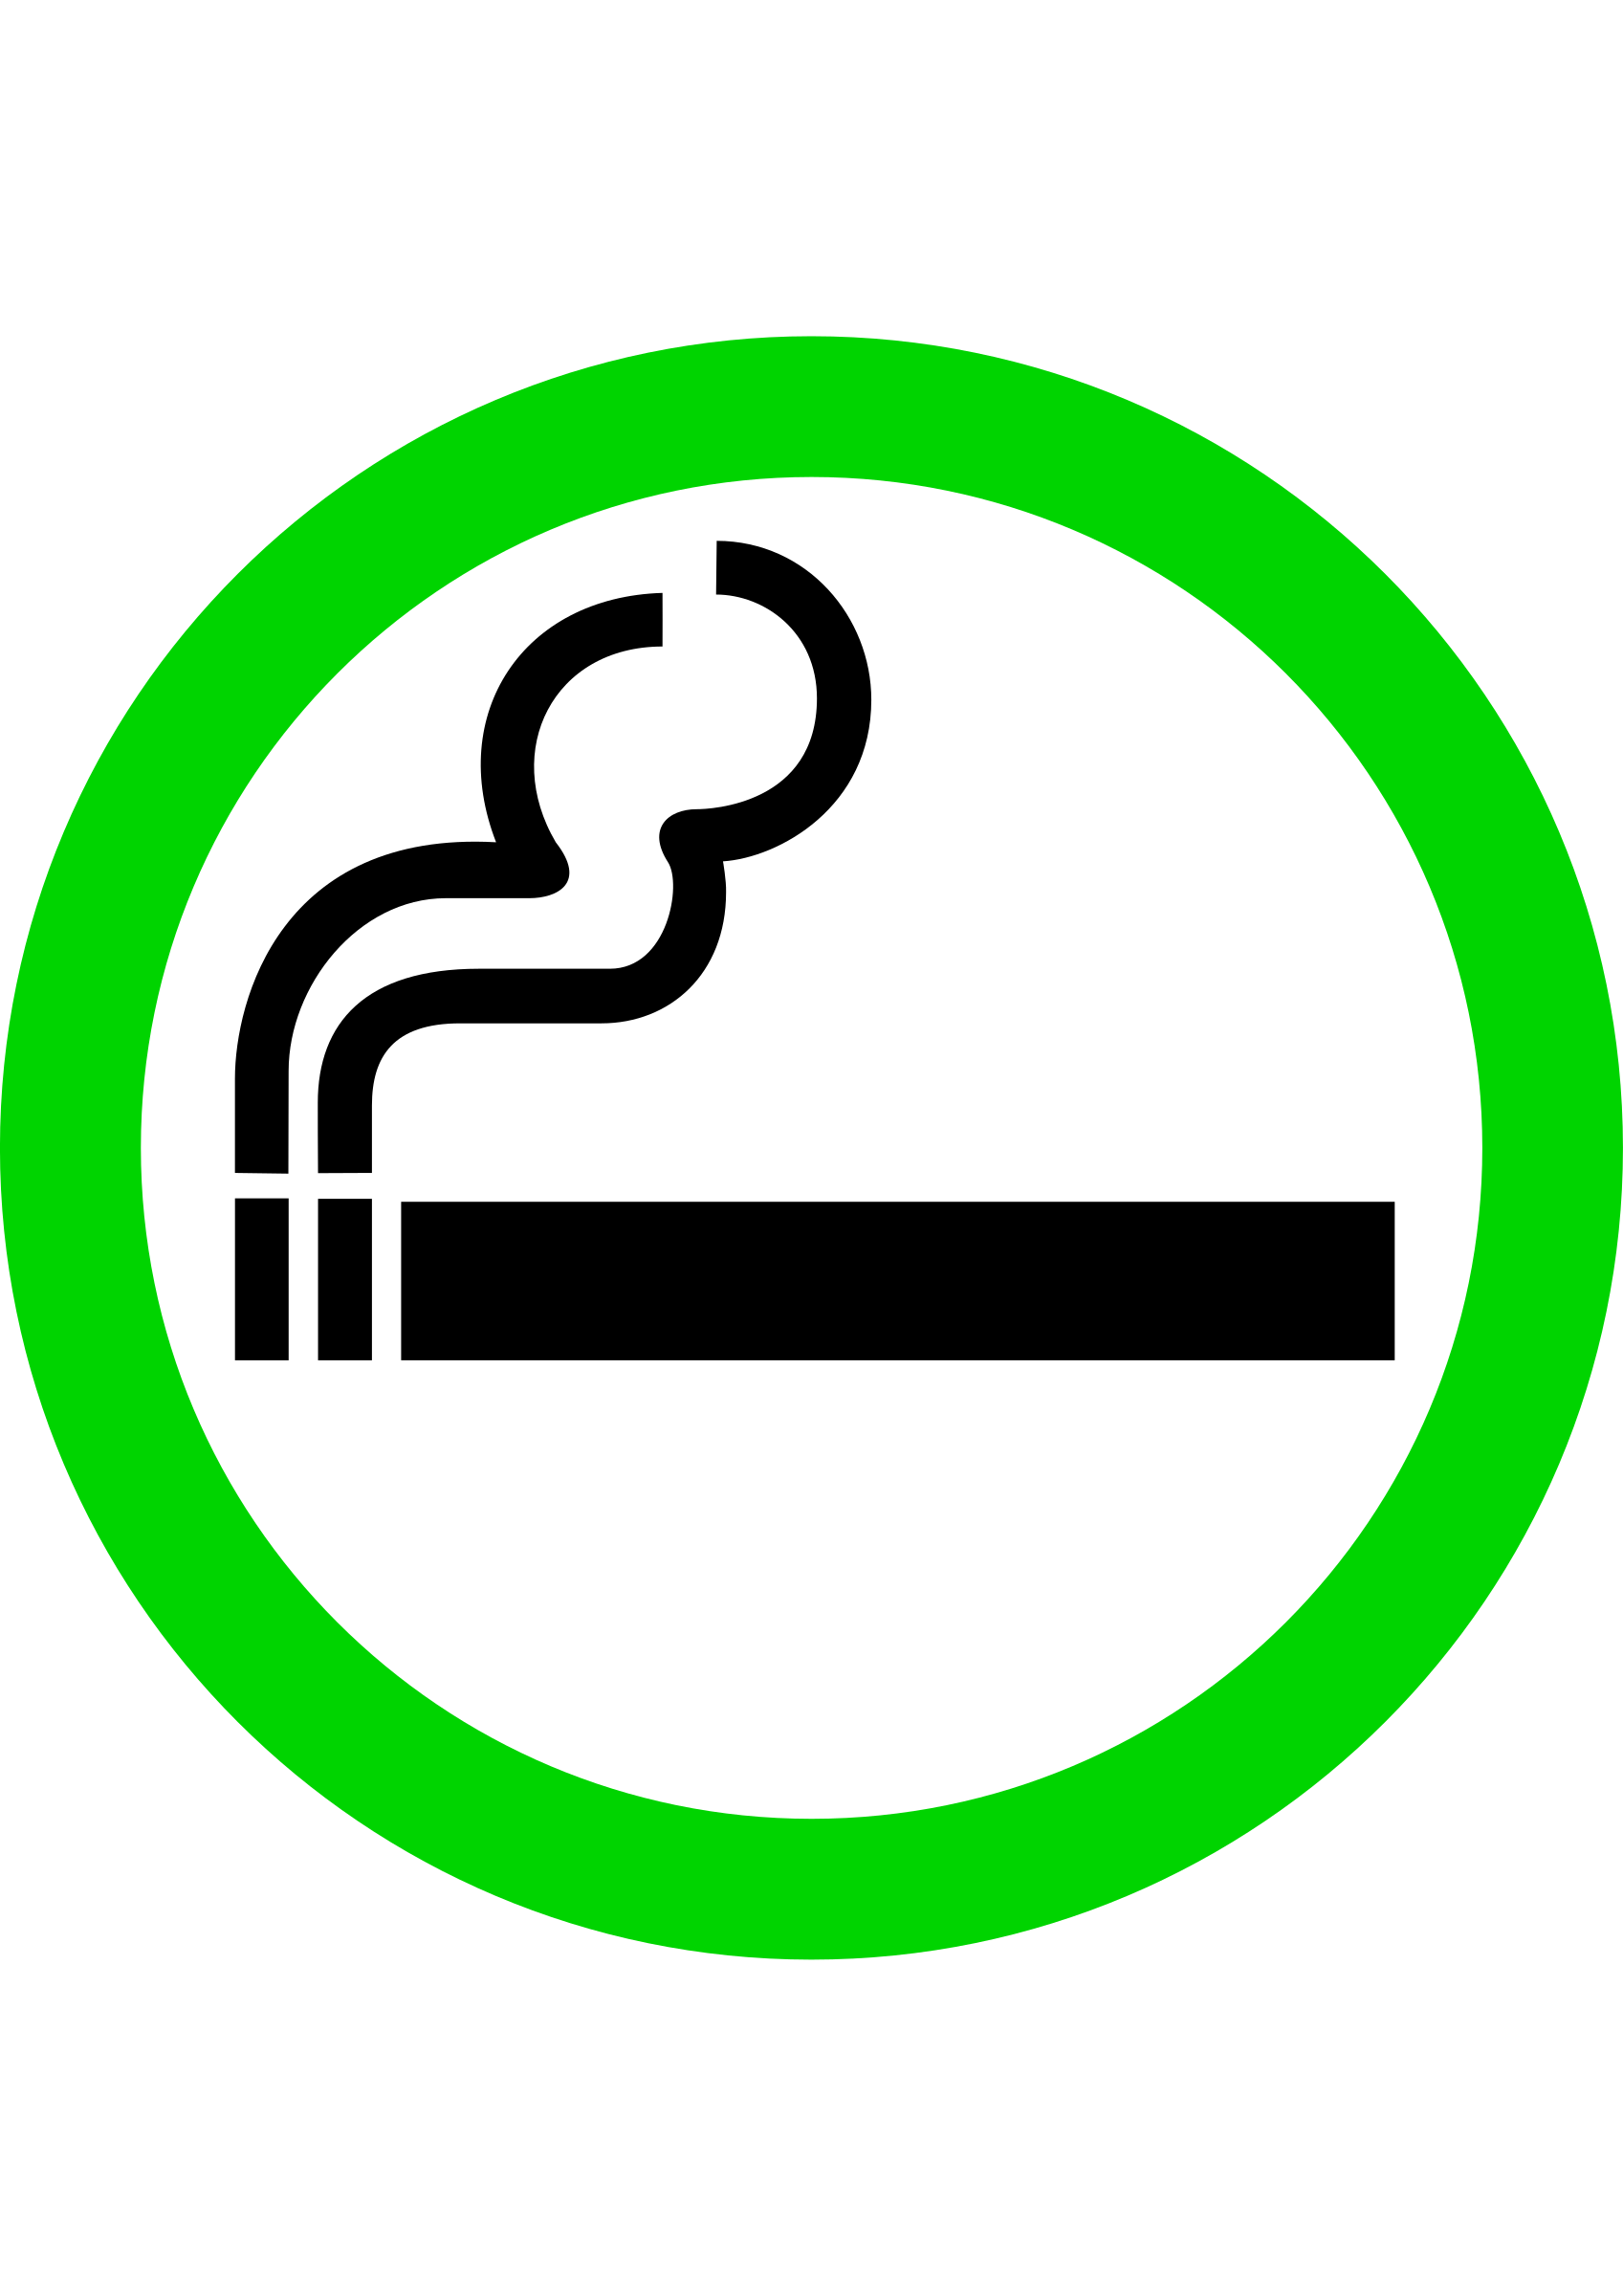 Smoking smoking area